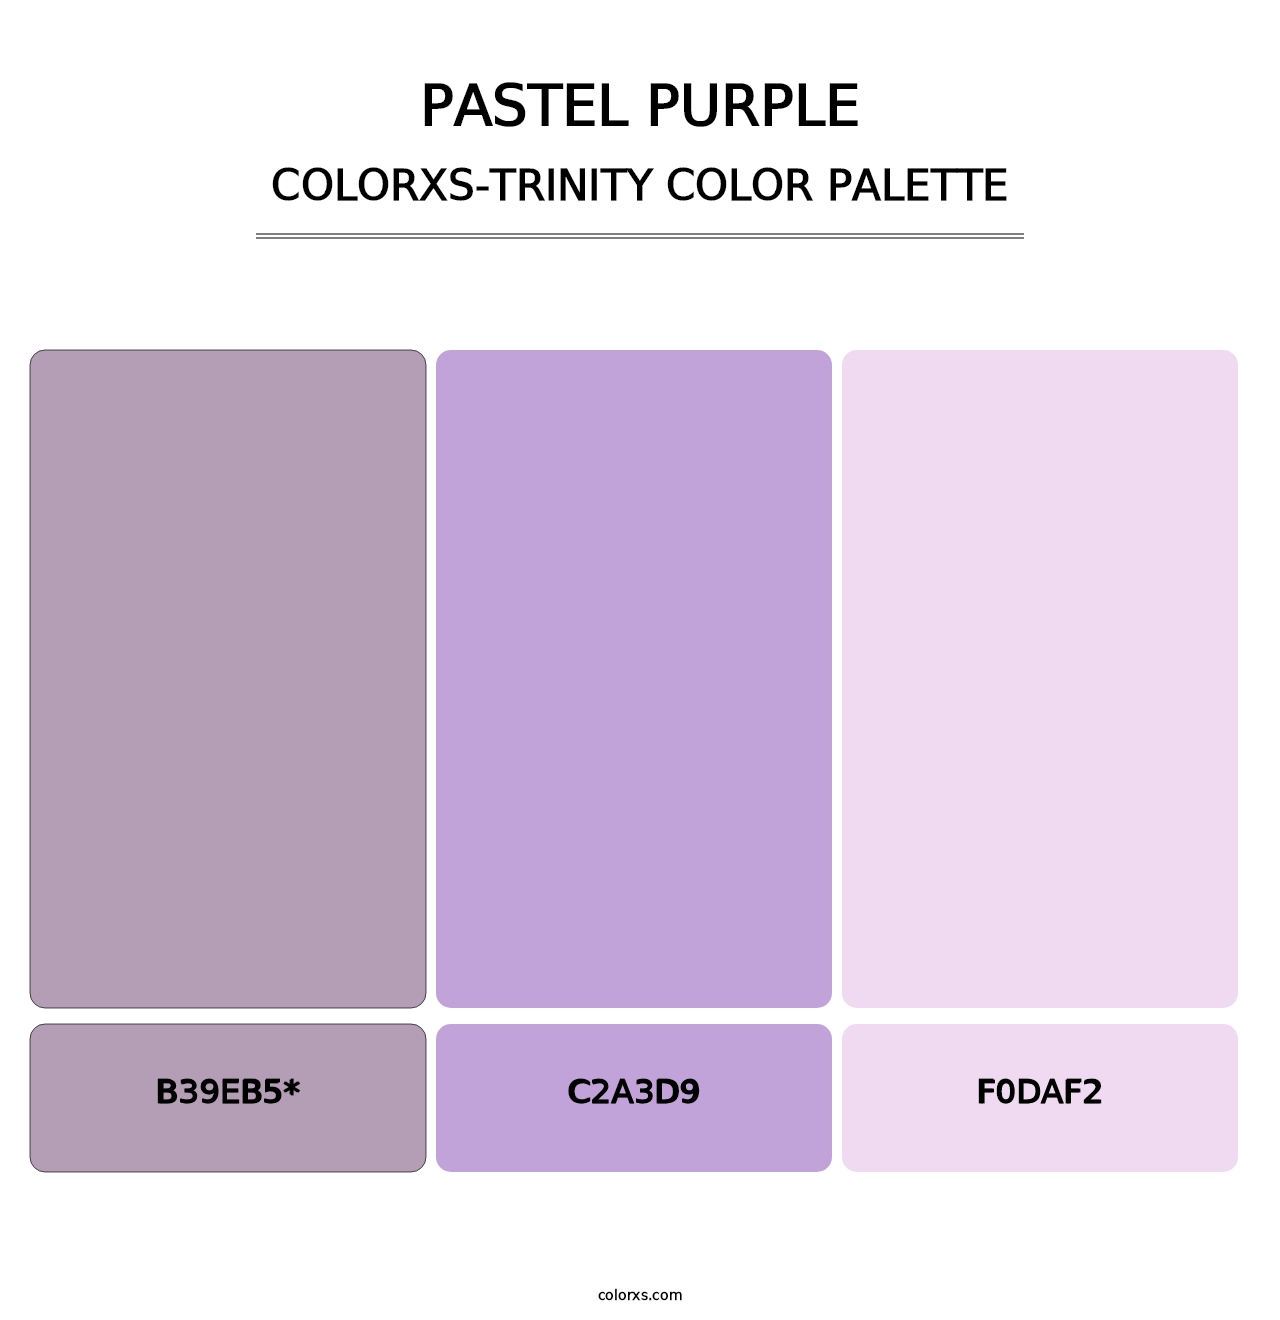 Pastel Purple - Colorxs Trinity Palette